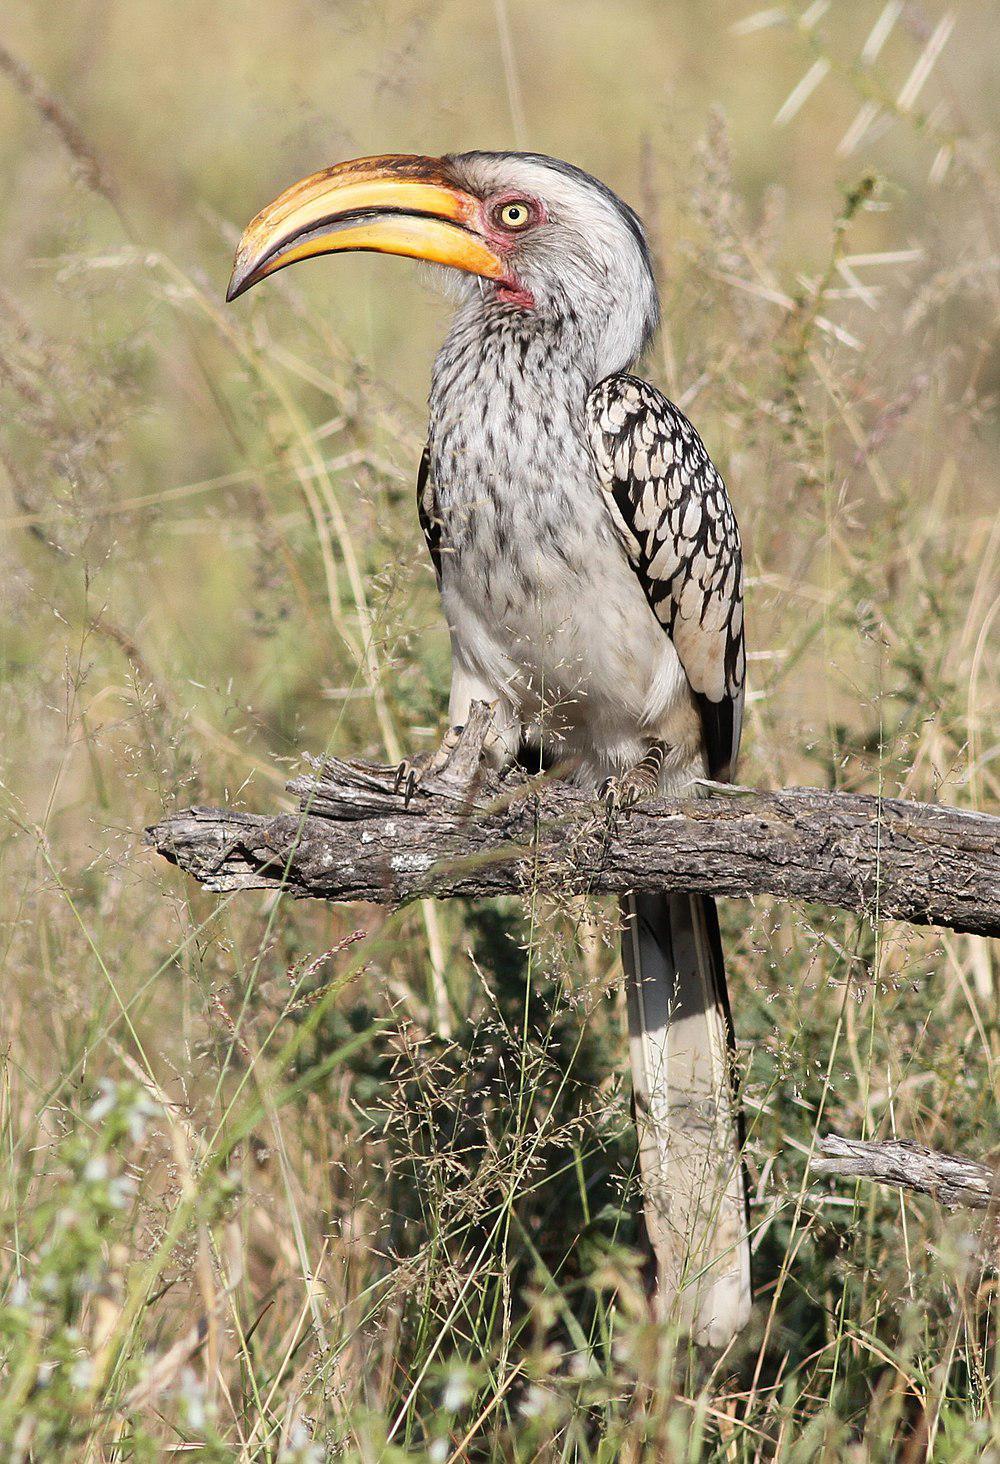 南黄弯嘴犀鸟 / Southern Yellow-billed Hornbill / Tockus leucomelas